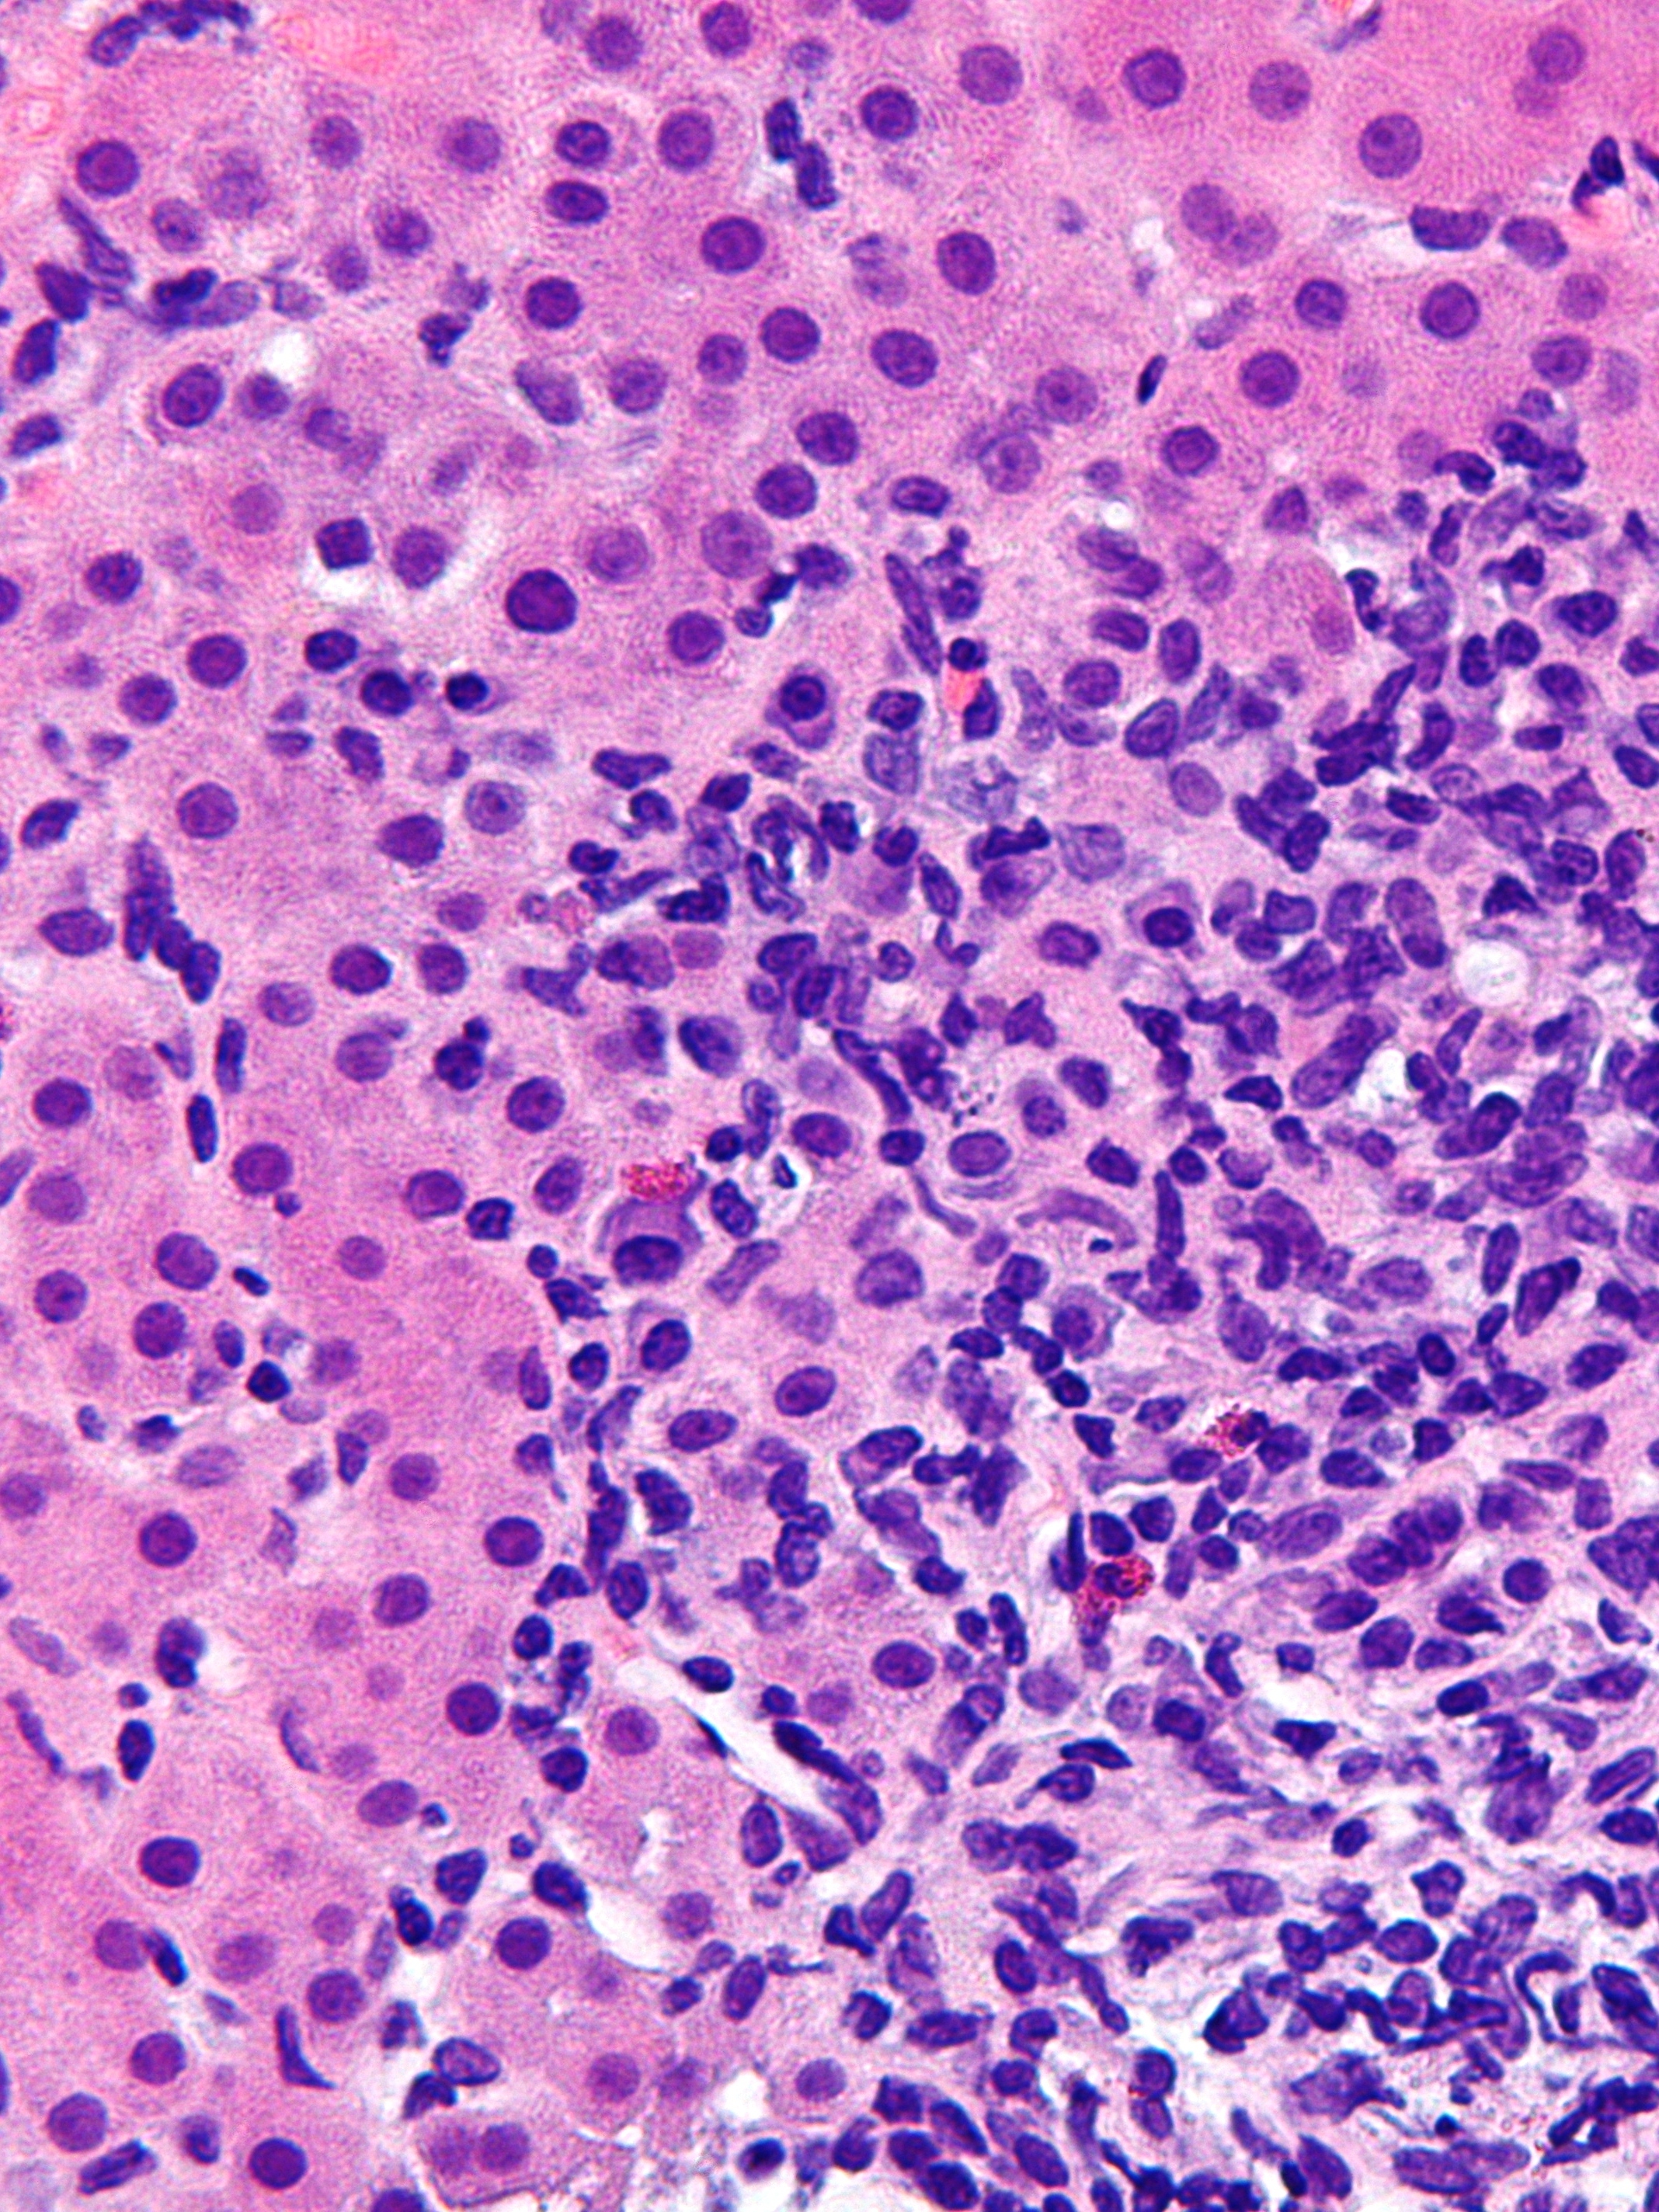 File:Autoimmune hepatitis - cropped - very high mag.jpg